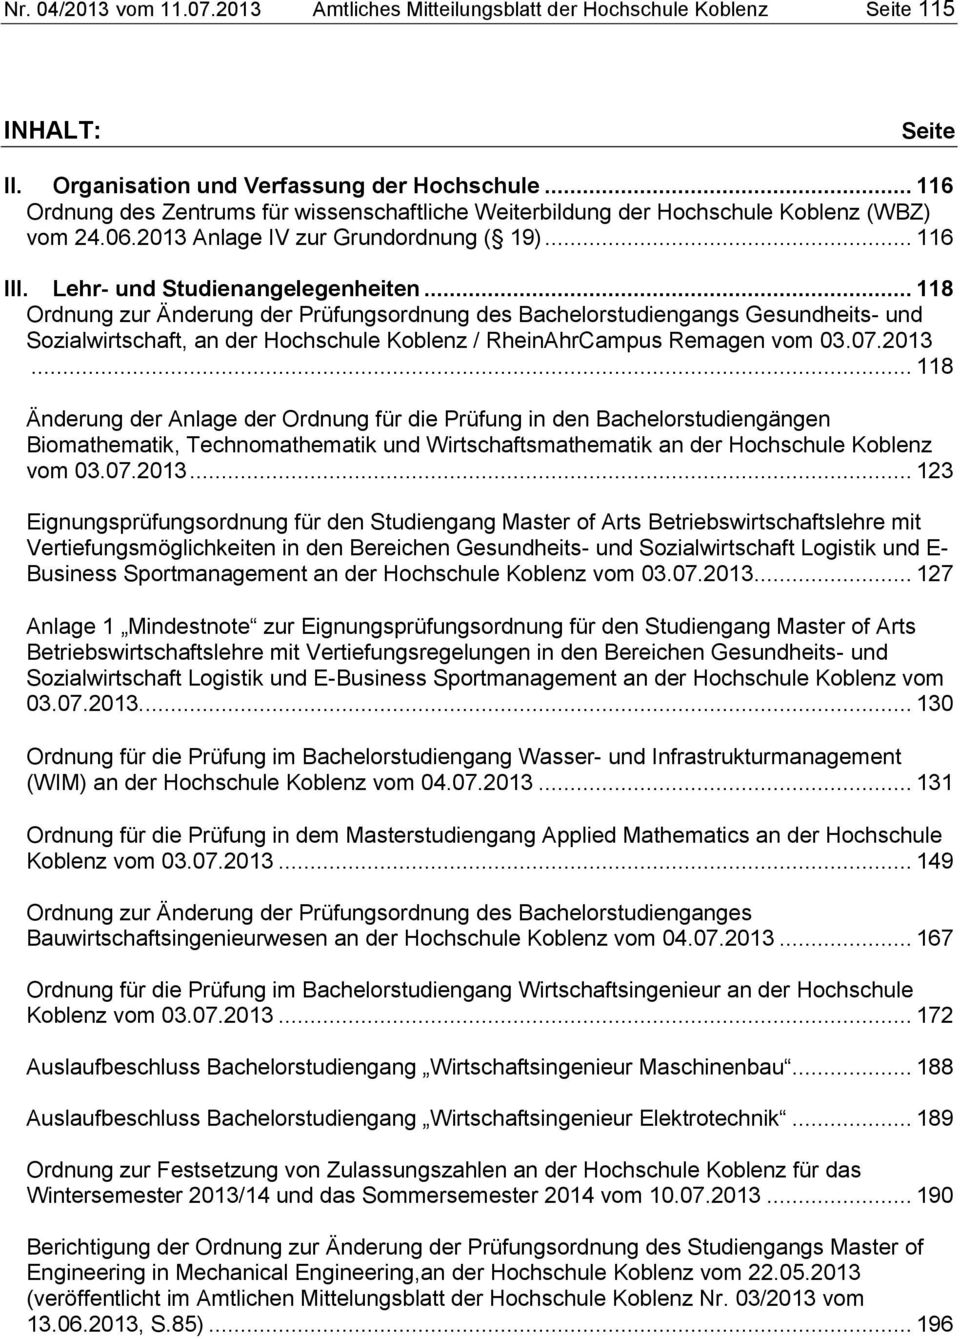 .. 118 Ordnung zur Änderung der Prüfungsordnung des Bachelorstudiengangs Gesundheits- und Sozialwirtschaft, an der Hochschule Koblenz / RheinAhrCampus Remagen vom 03.07.2013.